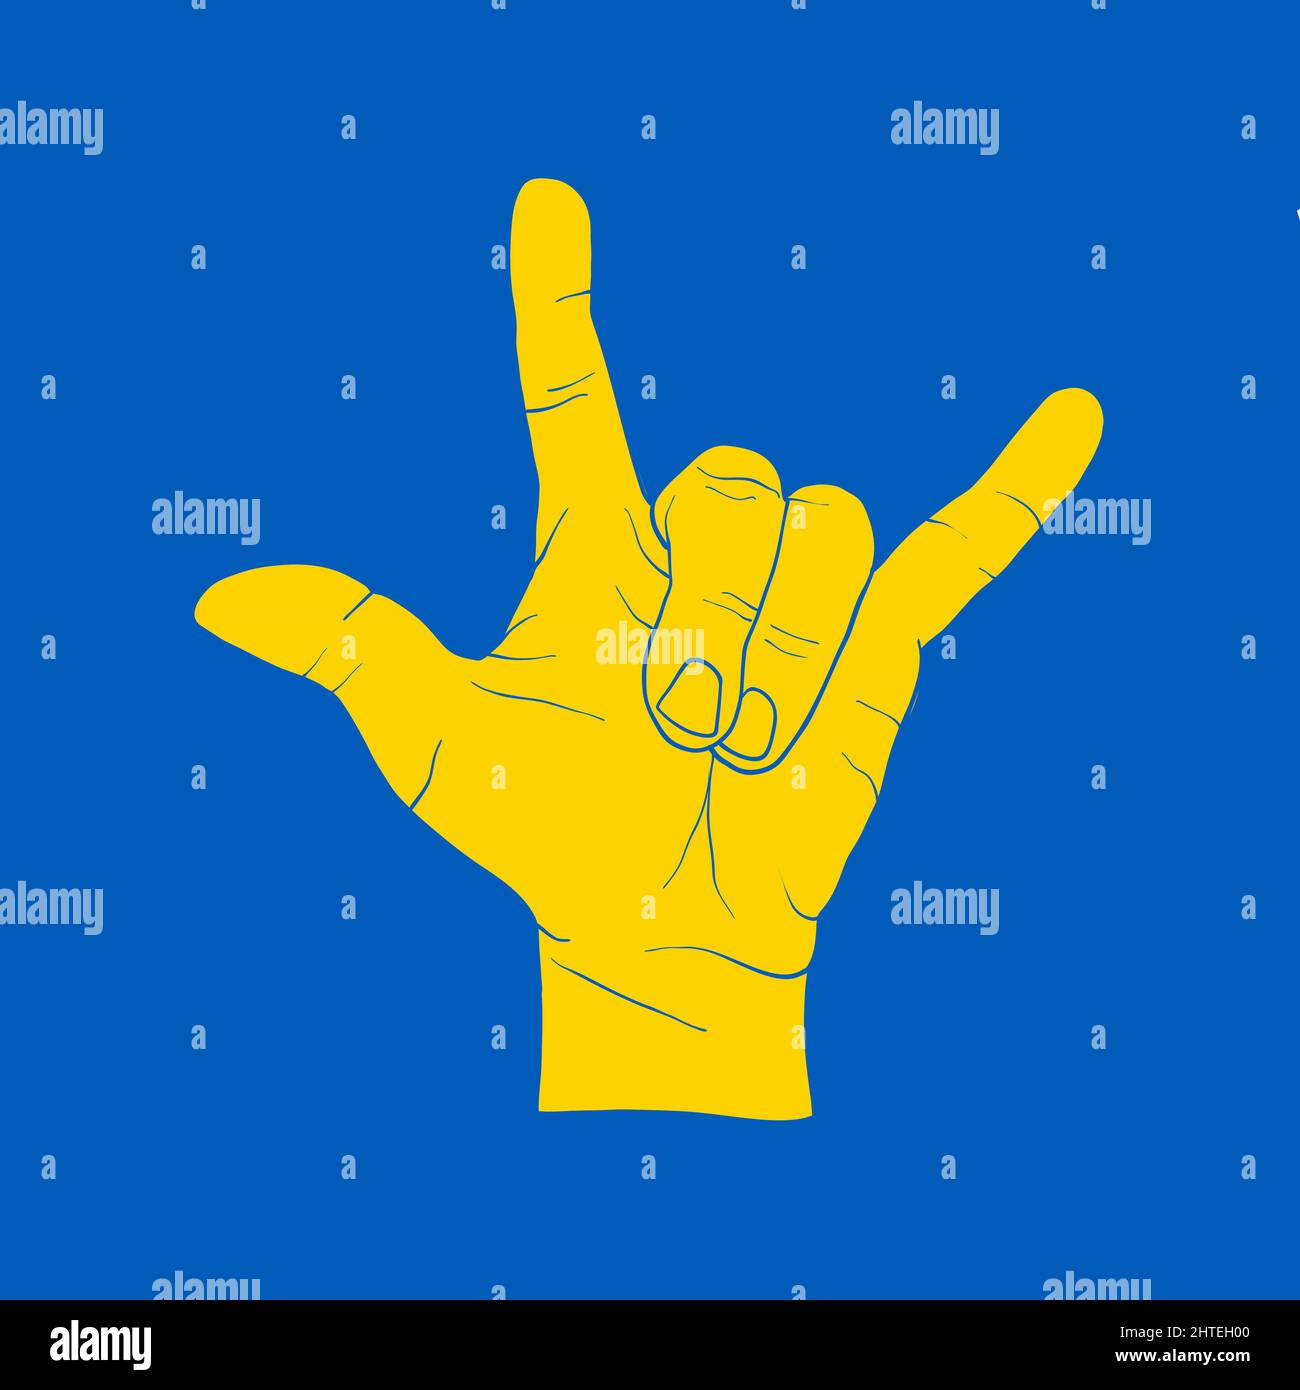 Segno giallo della mano diavolo su blu. Icona di sostegno per Kyiv e Ucraina. Resta forte insieme. Simbolo patriottico, icona.-SupplementalCategories+=immagini Illustrazione Vettoriale